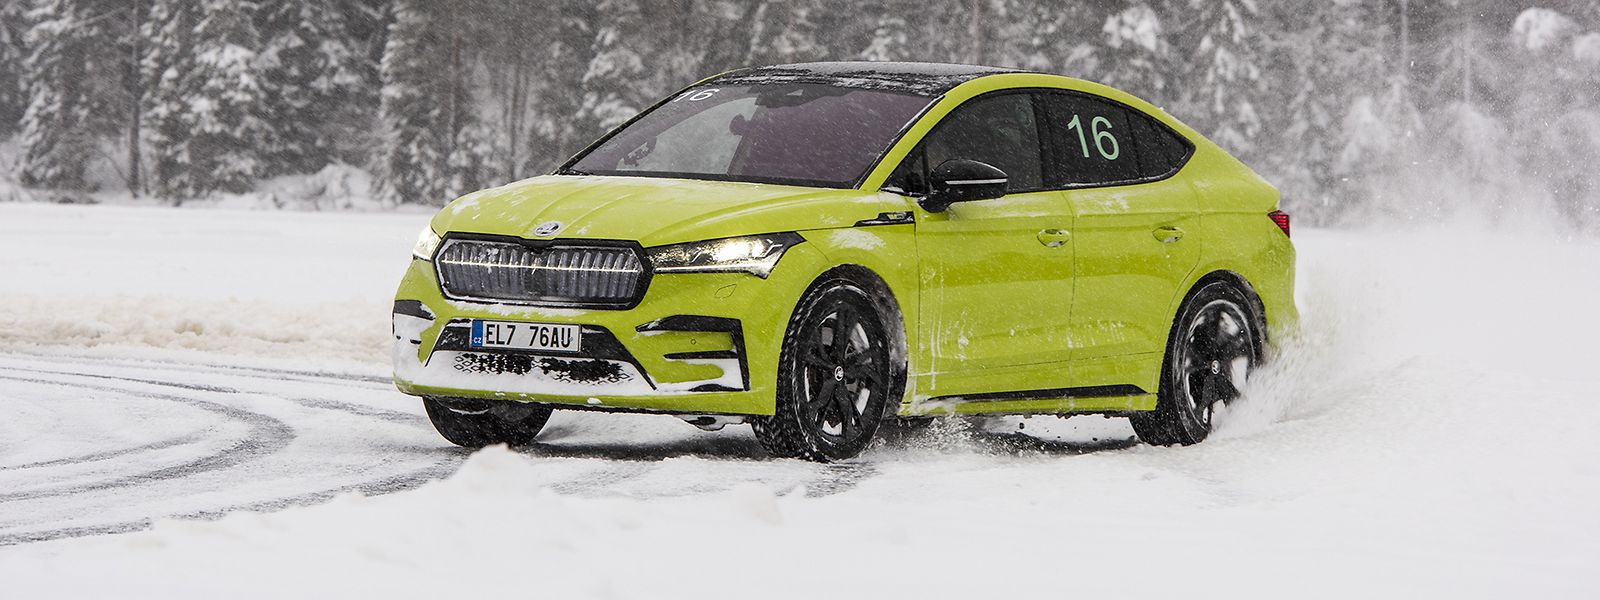 Der Winter in Schweden bietet Automobilherstellern ideale Testbedingungen. Auch Skoda erprobt Serienmodelle regelmäßig auf Eis und Schnee.